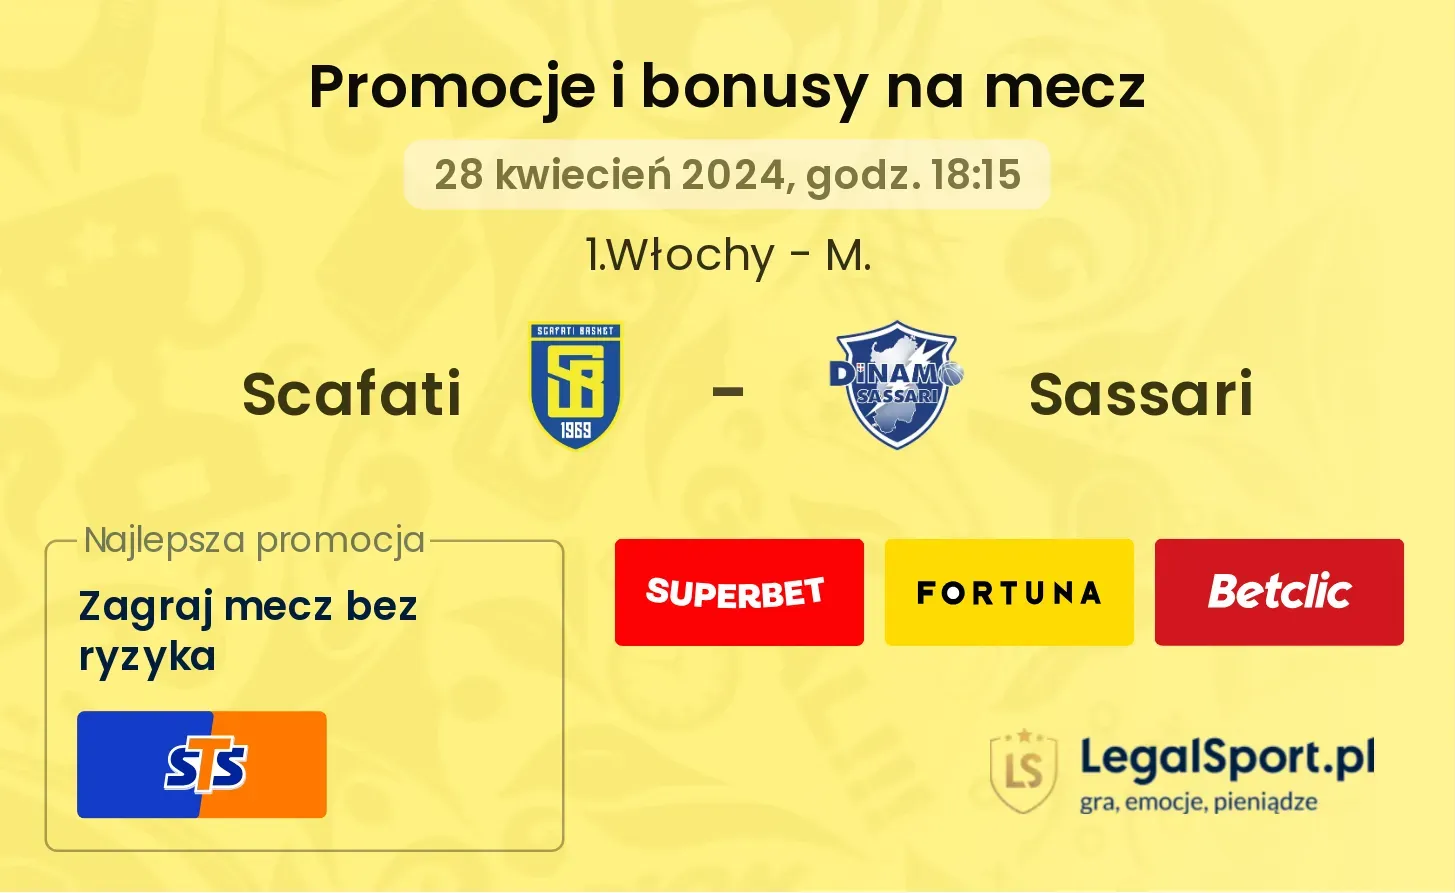 Scafati - Sassari promocje bonusy na mecz